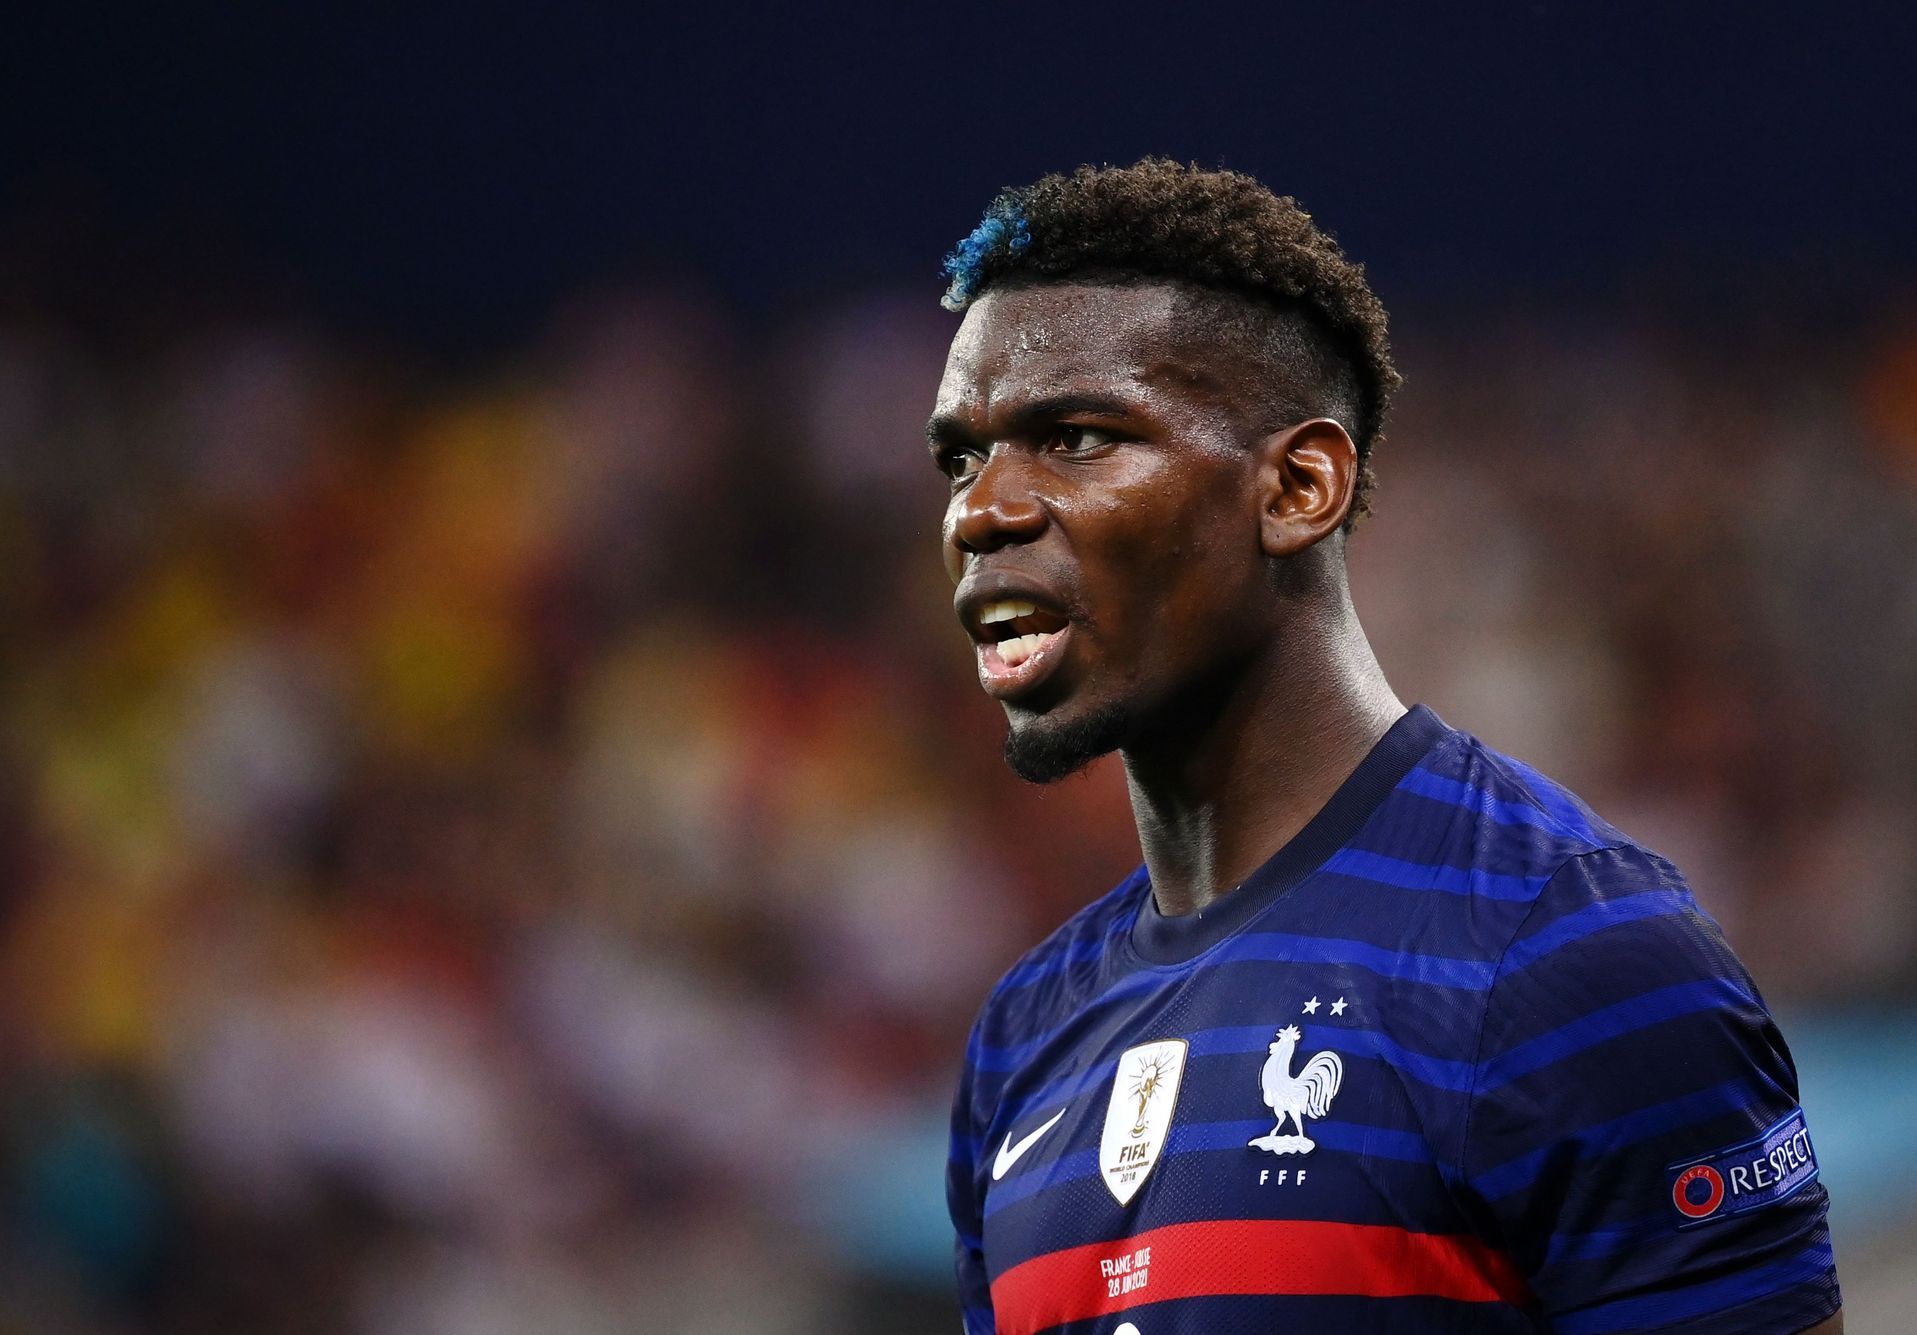 Le footballeur français Pogba s’est blessé à la cuisse et cherche désespérément à participer à la Coupe du monde